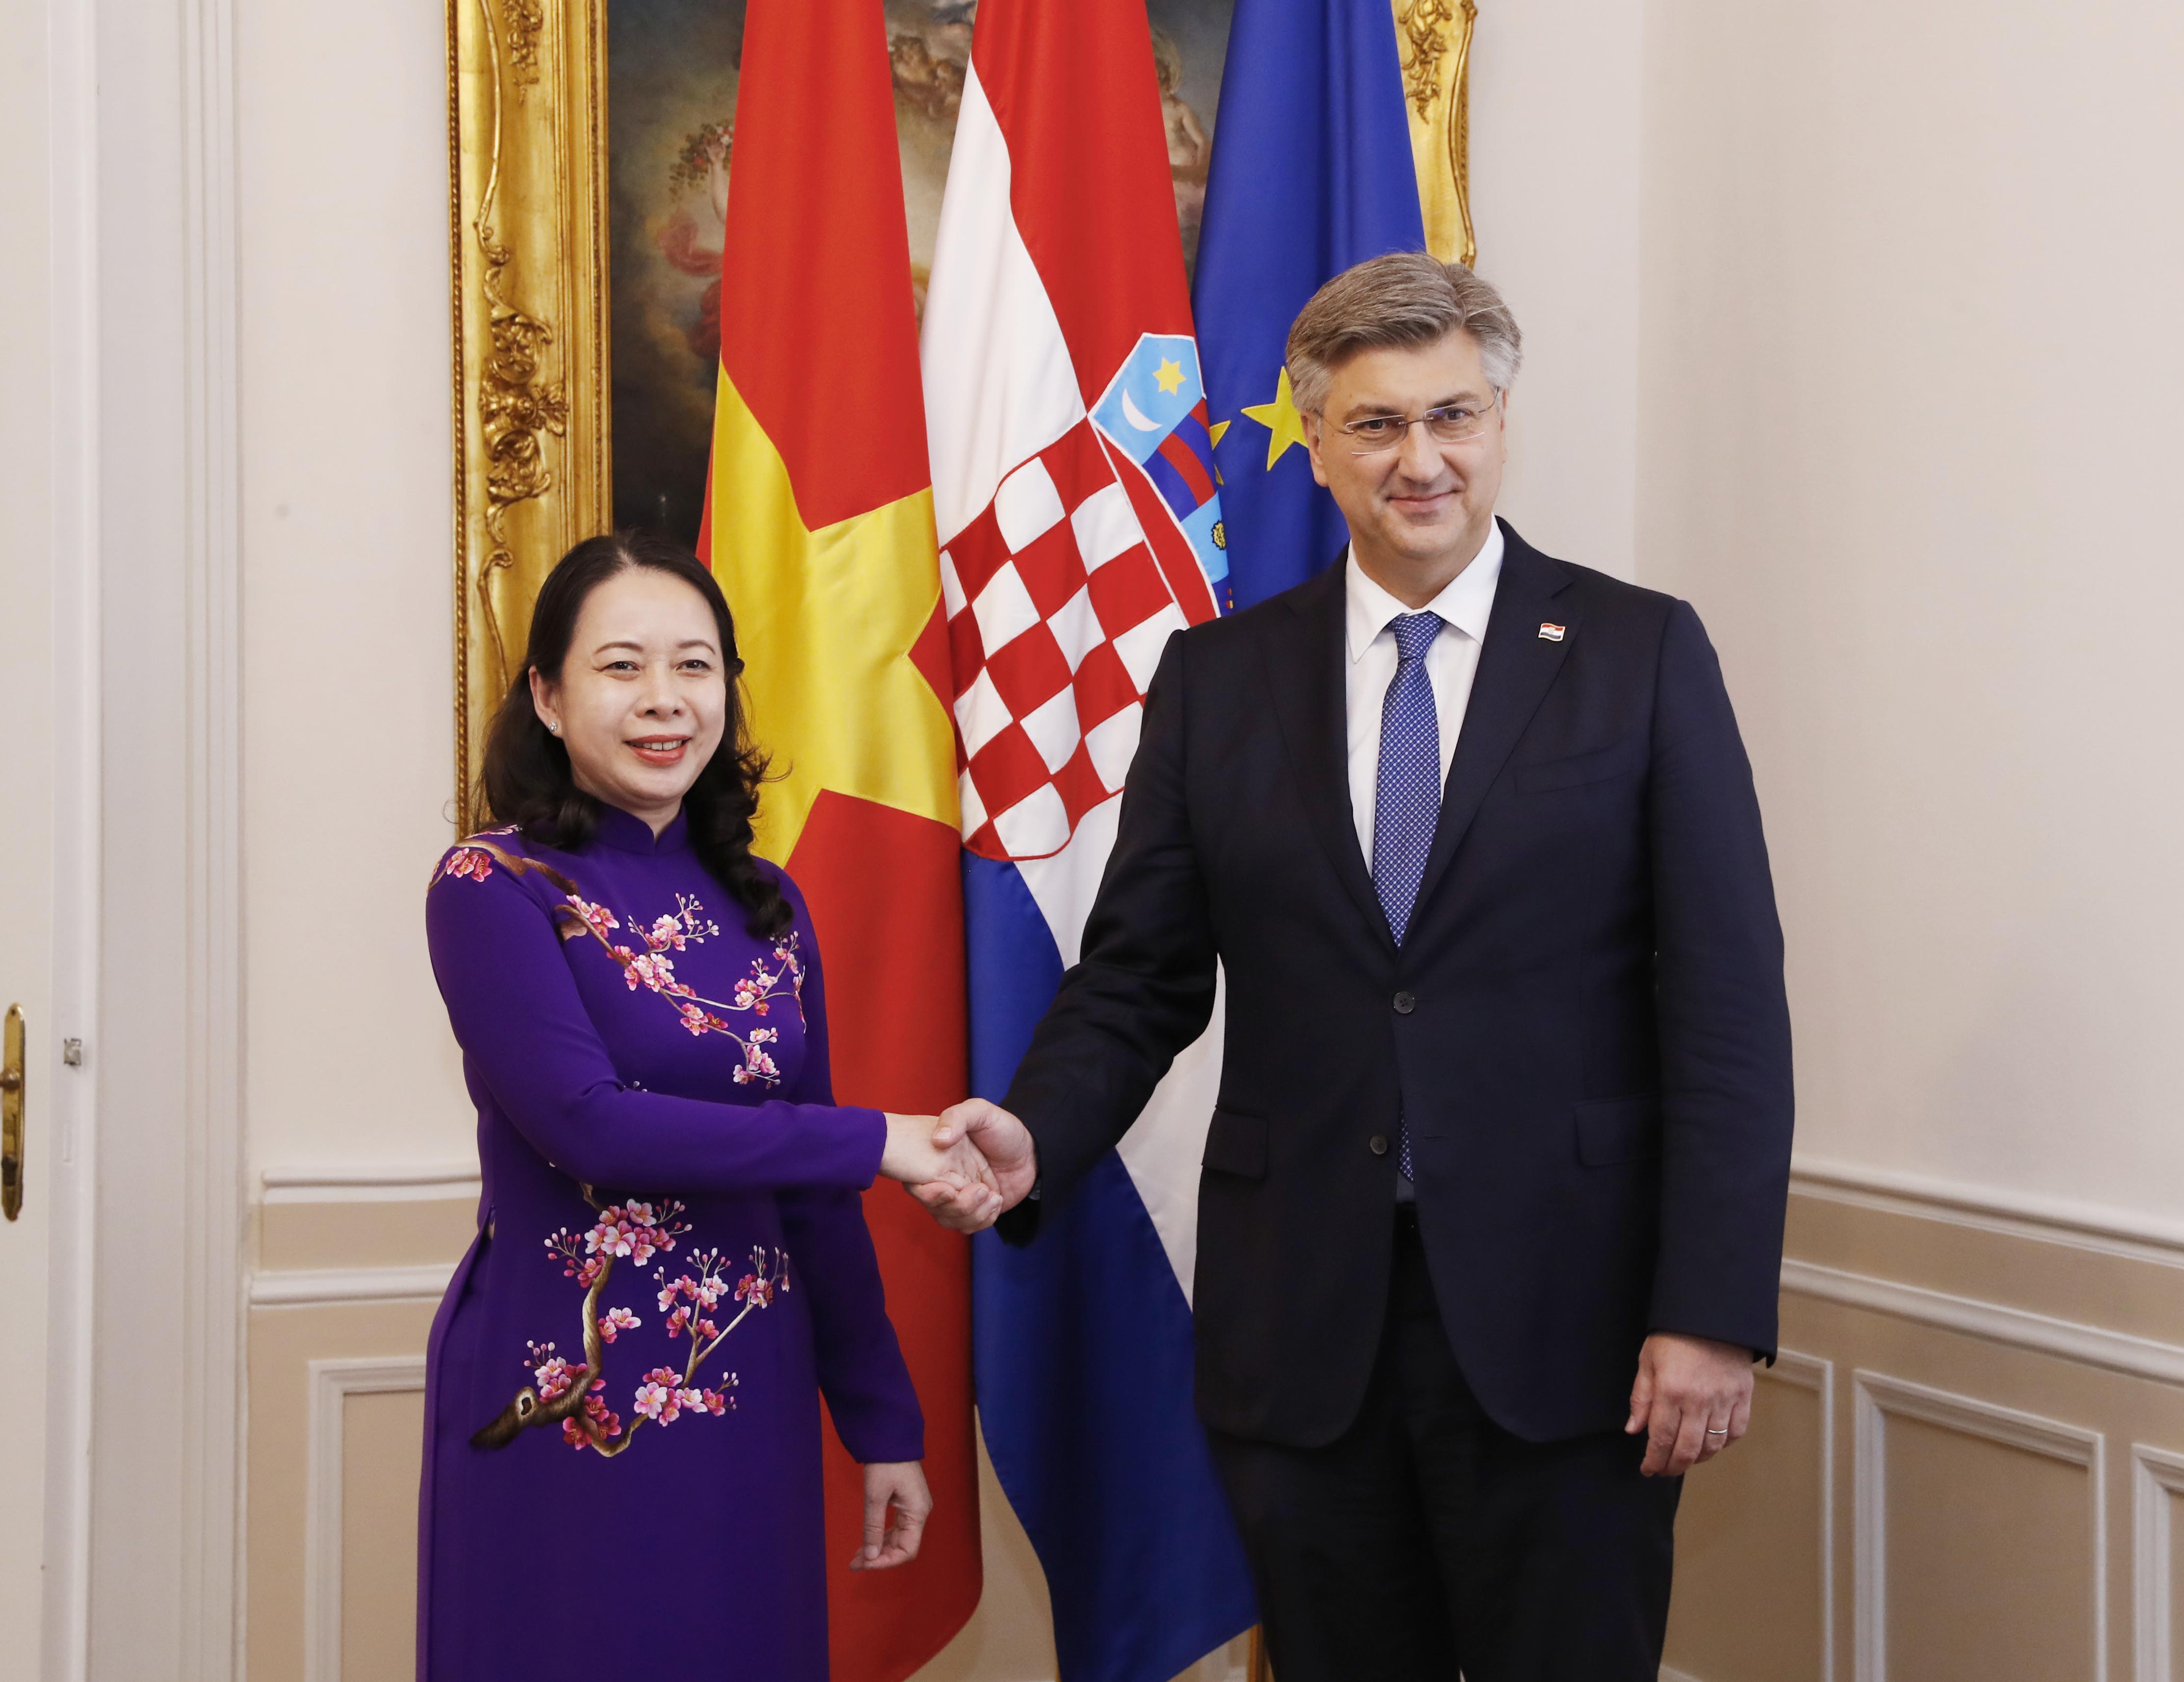 Đưa kim ngạch thương mại Việt Nam - Croatia đạt 200 triệu USD là một thành tựu đáng khen của hai quốc gia. Việt Nam và Croatia đang mở rộng cơ hội hợp tác về thương mại và đầu tư. Hãy xem những thông tin về các sản phẩm xuất khẩu từ Việt Nam sang Croatia, những sản phẩm thiết yếu của Croatia được nhập khẩu vào Việt Nam.